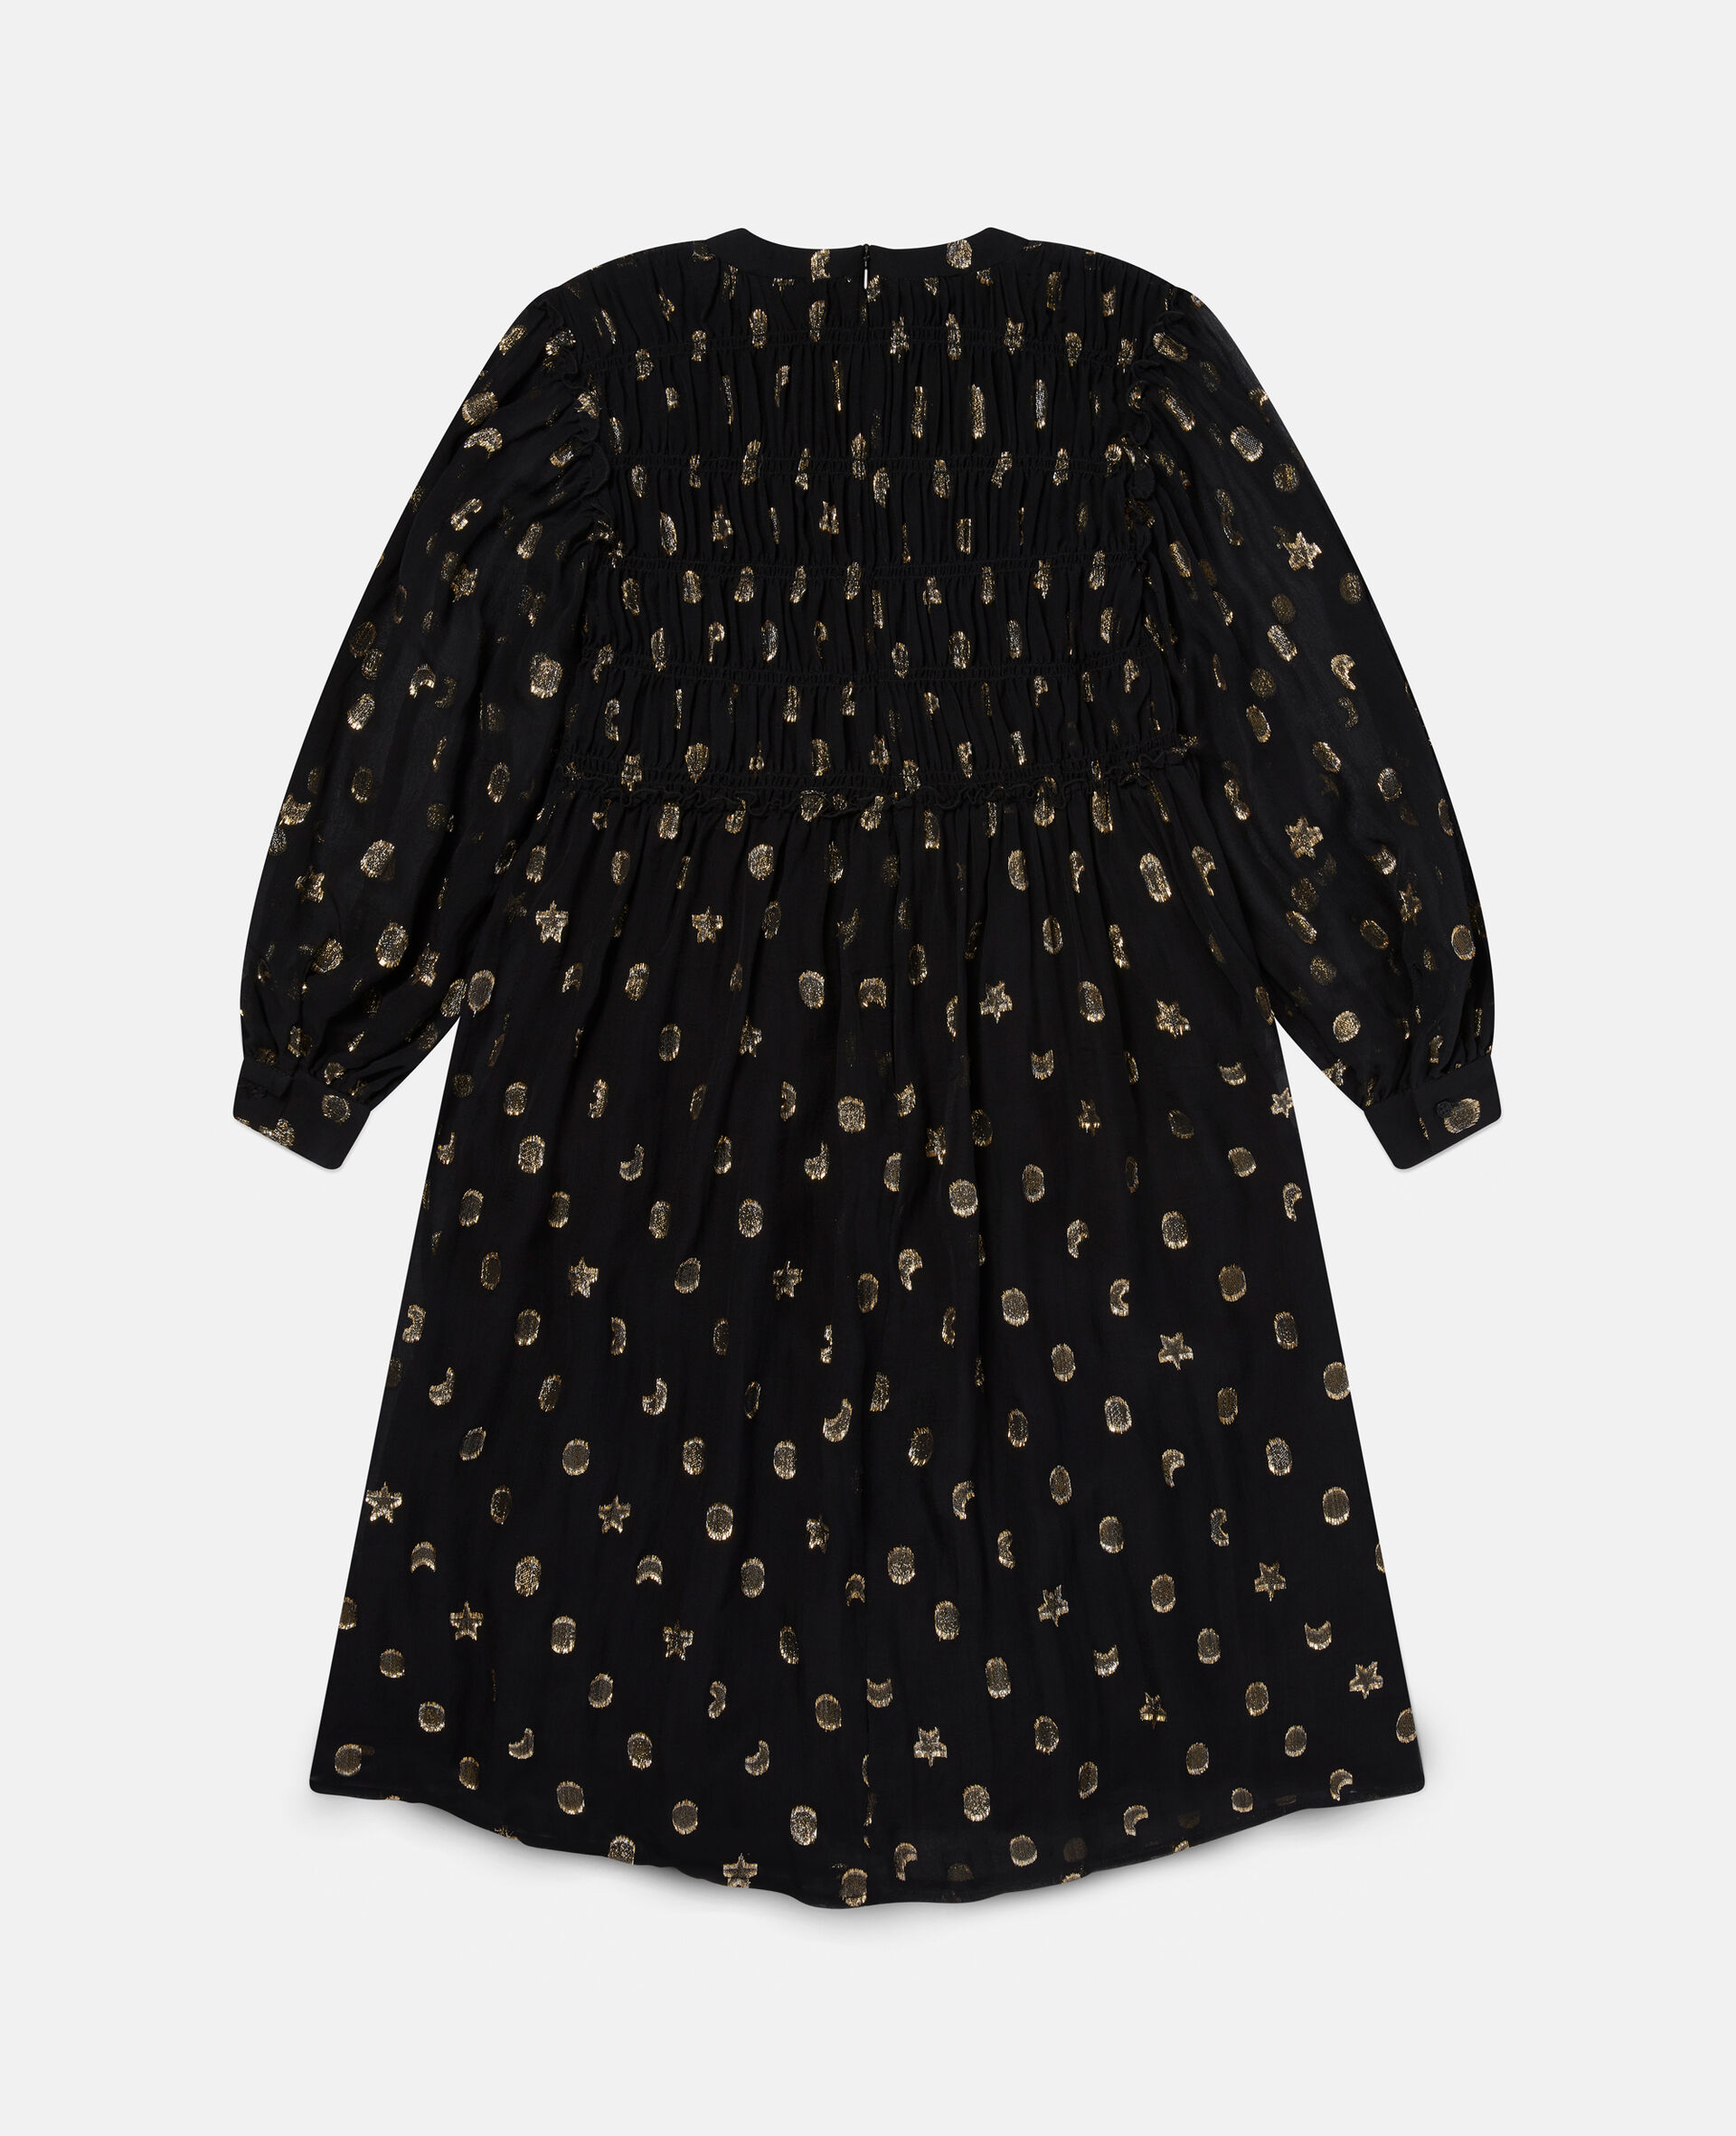 Gold Ruched Shapes Print Dress-Black-large image number 3